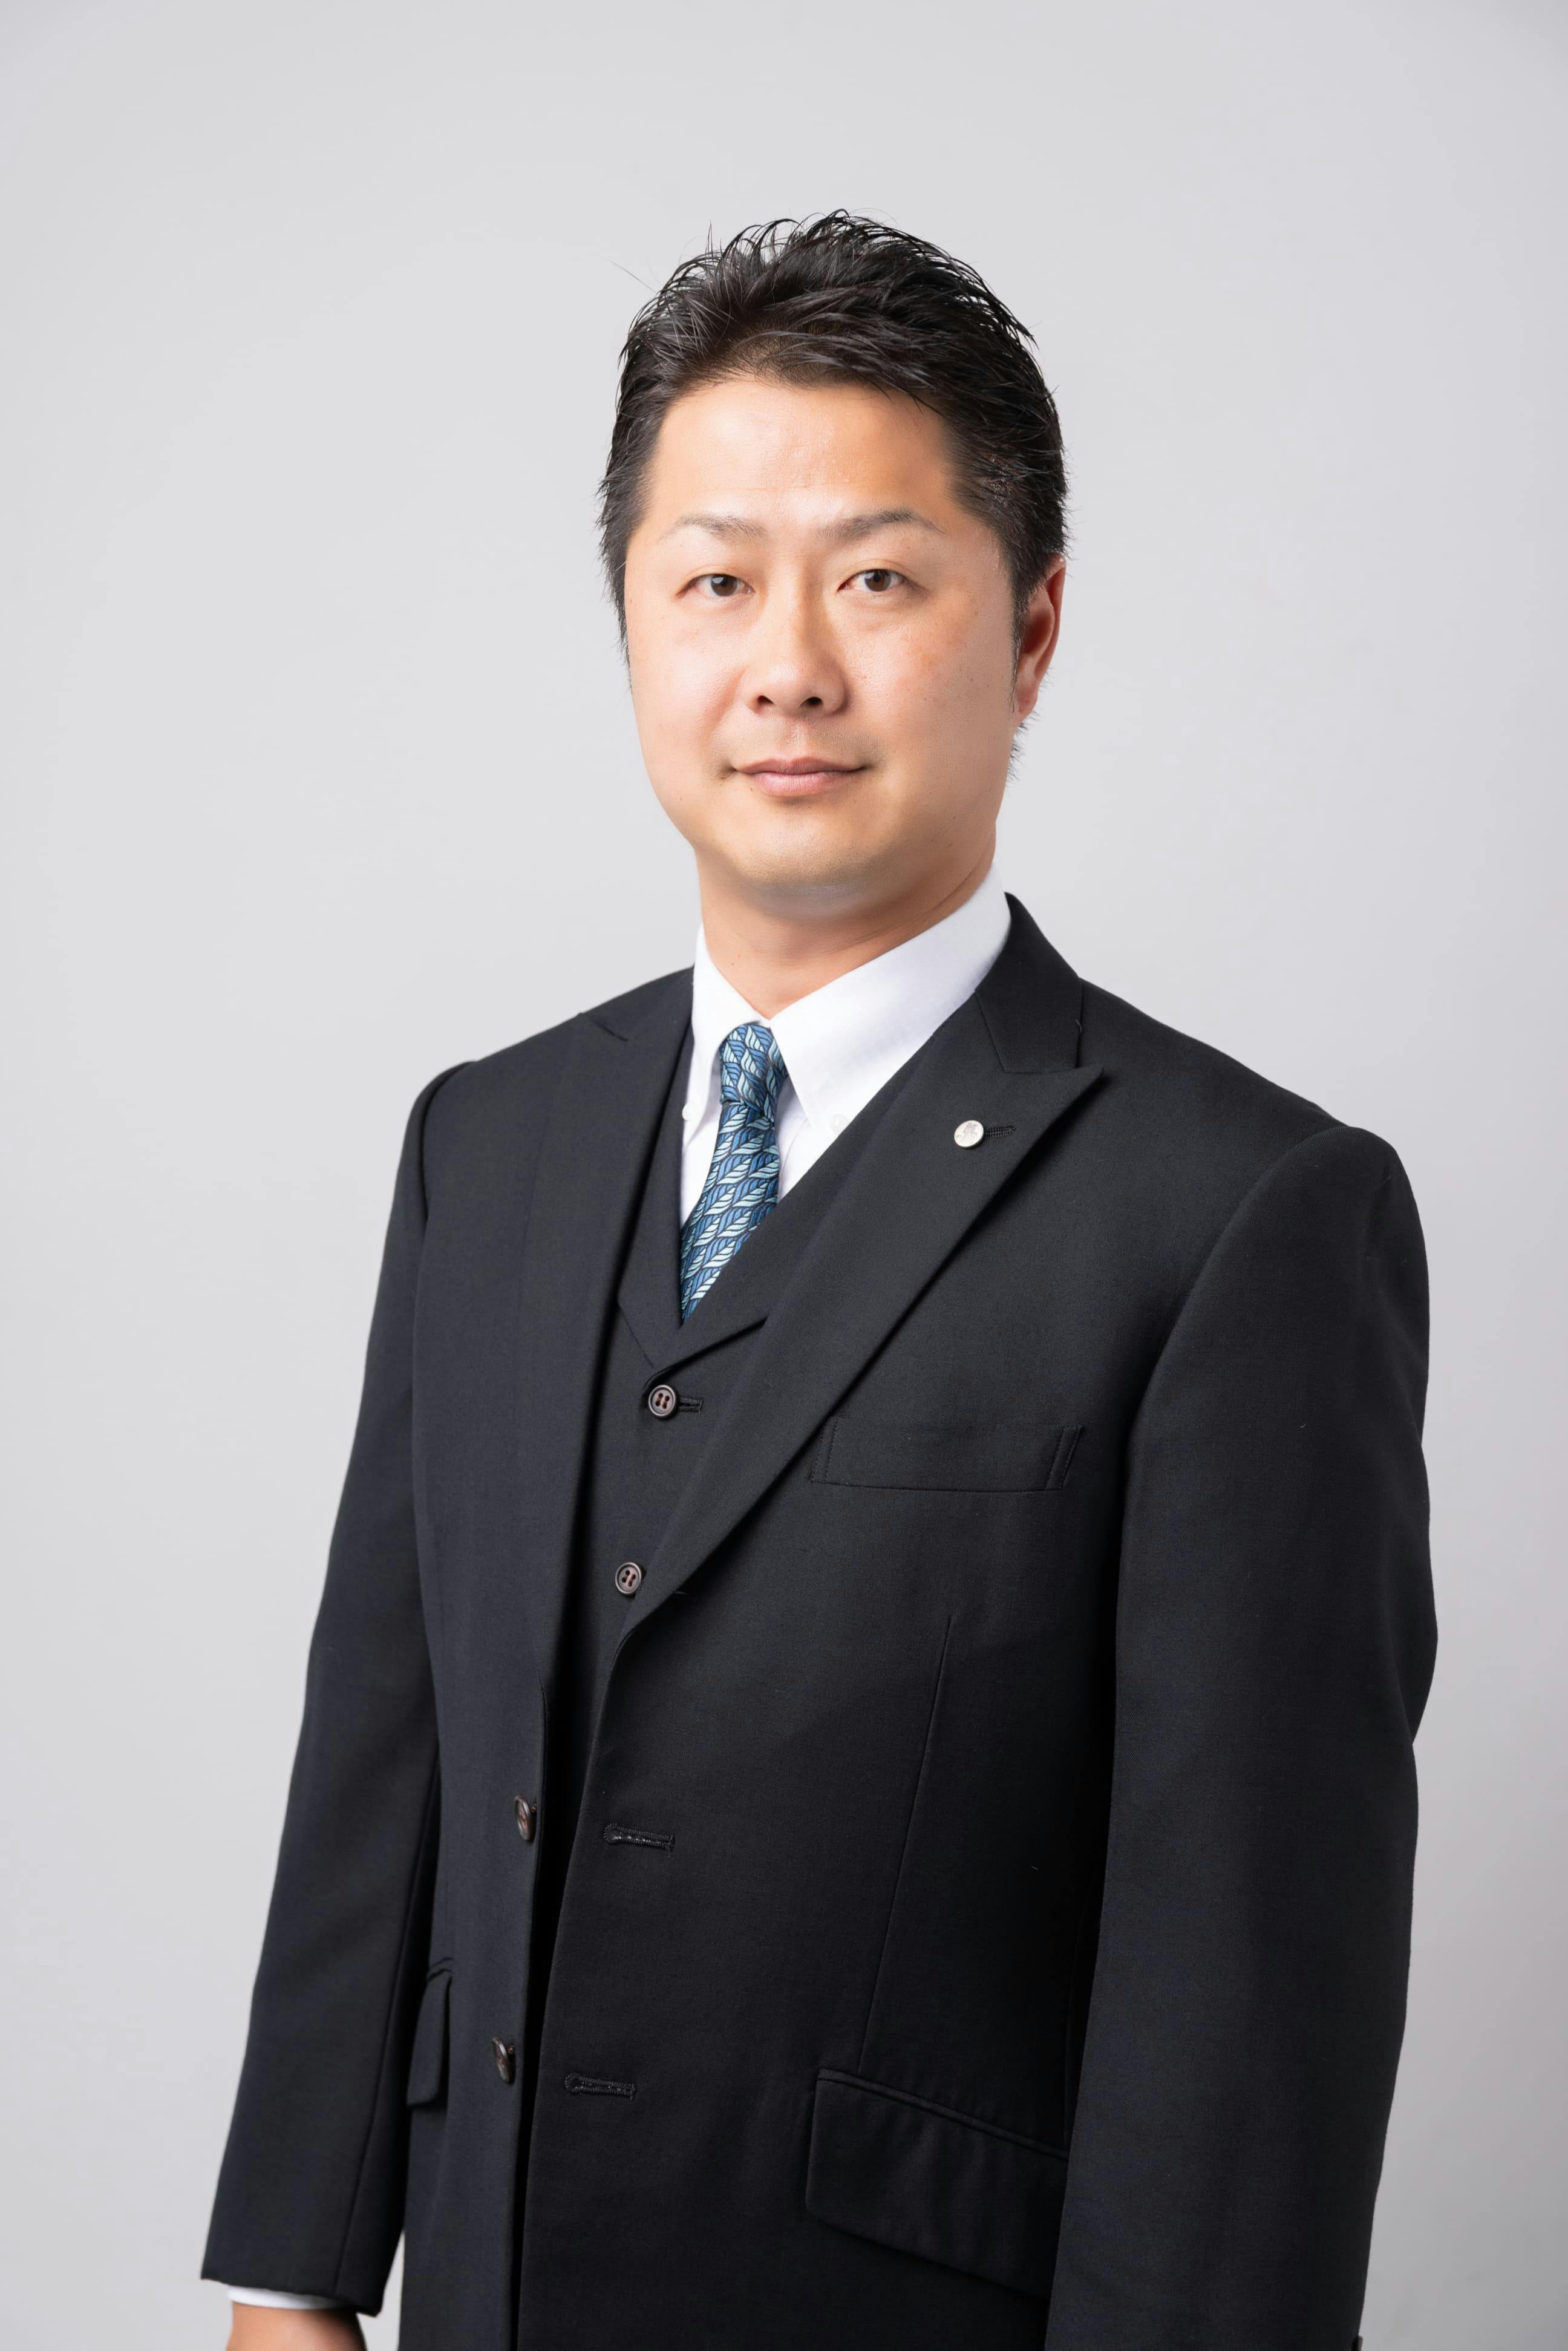 株式会社メルコーポレーション 代表取締役社長 久野 優次